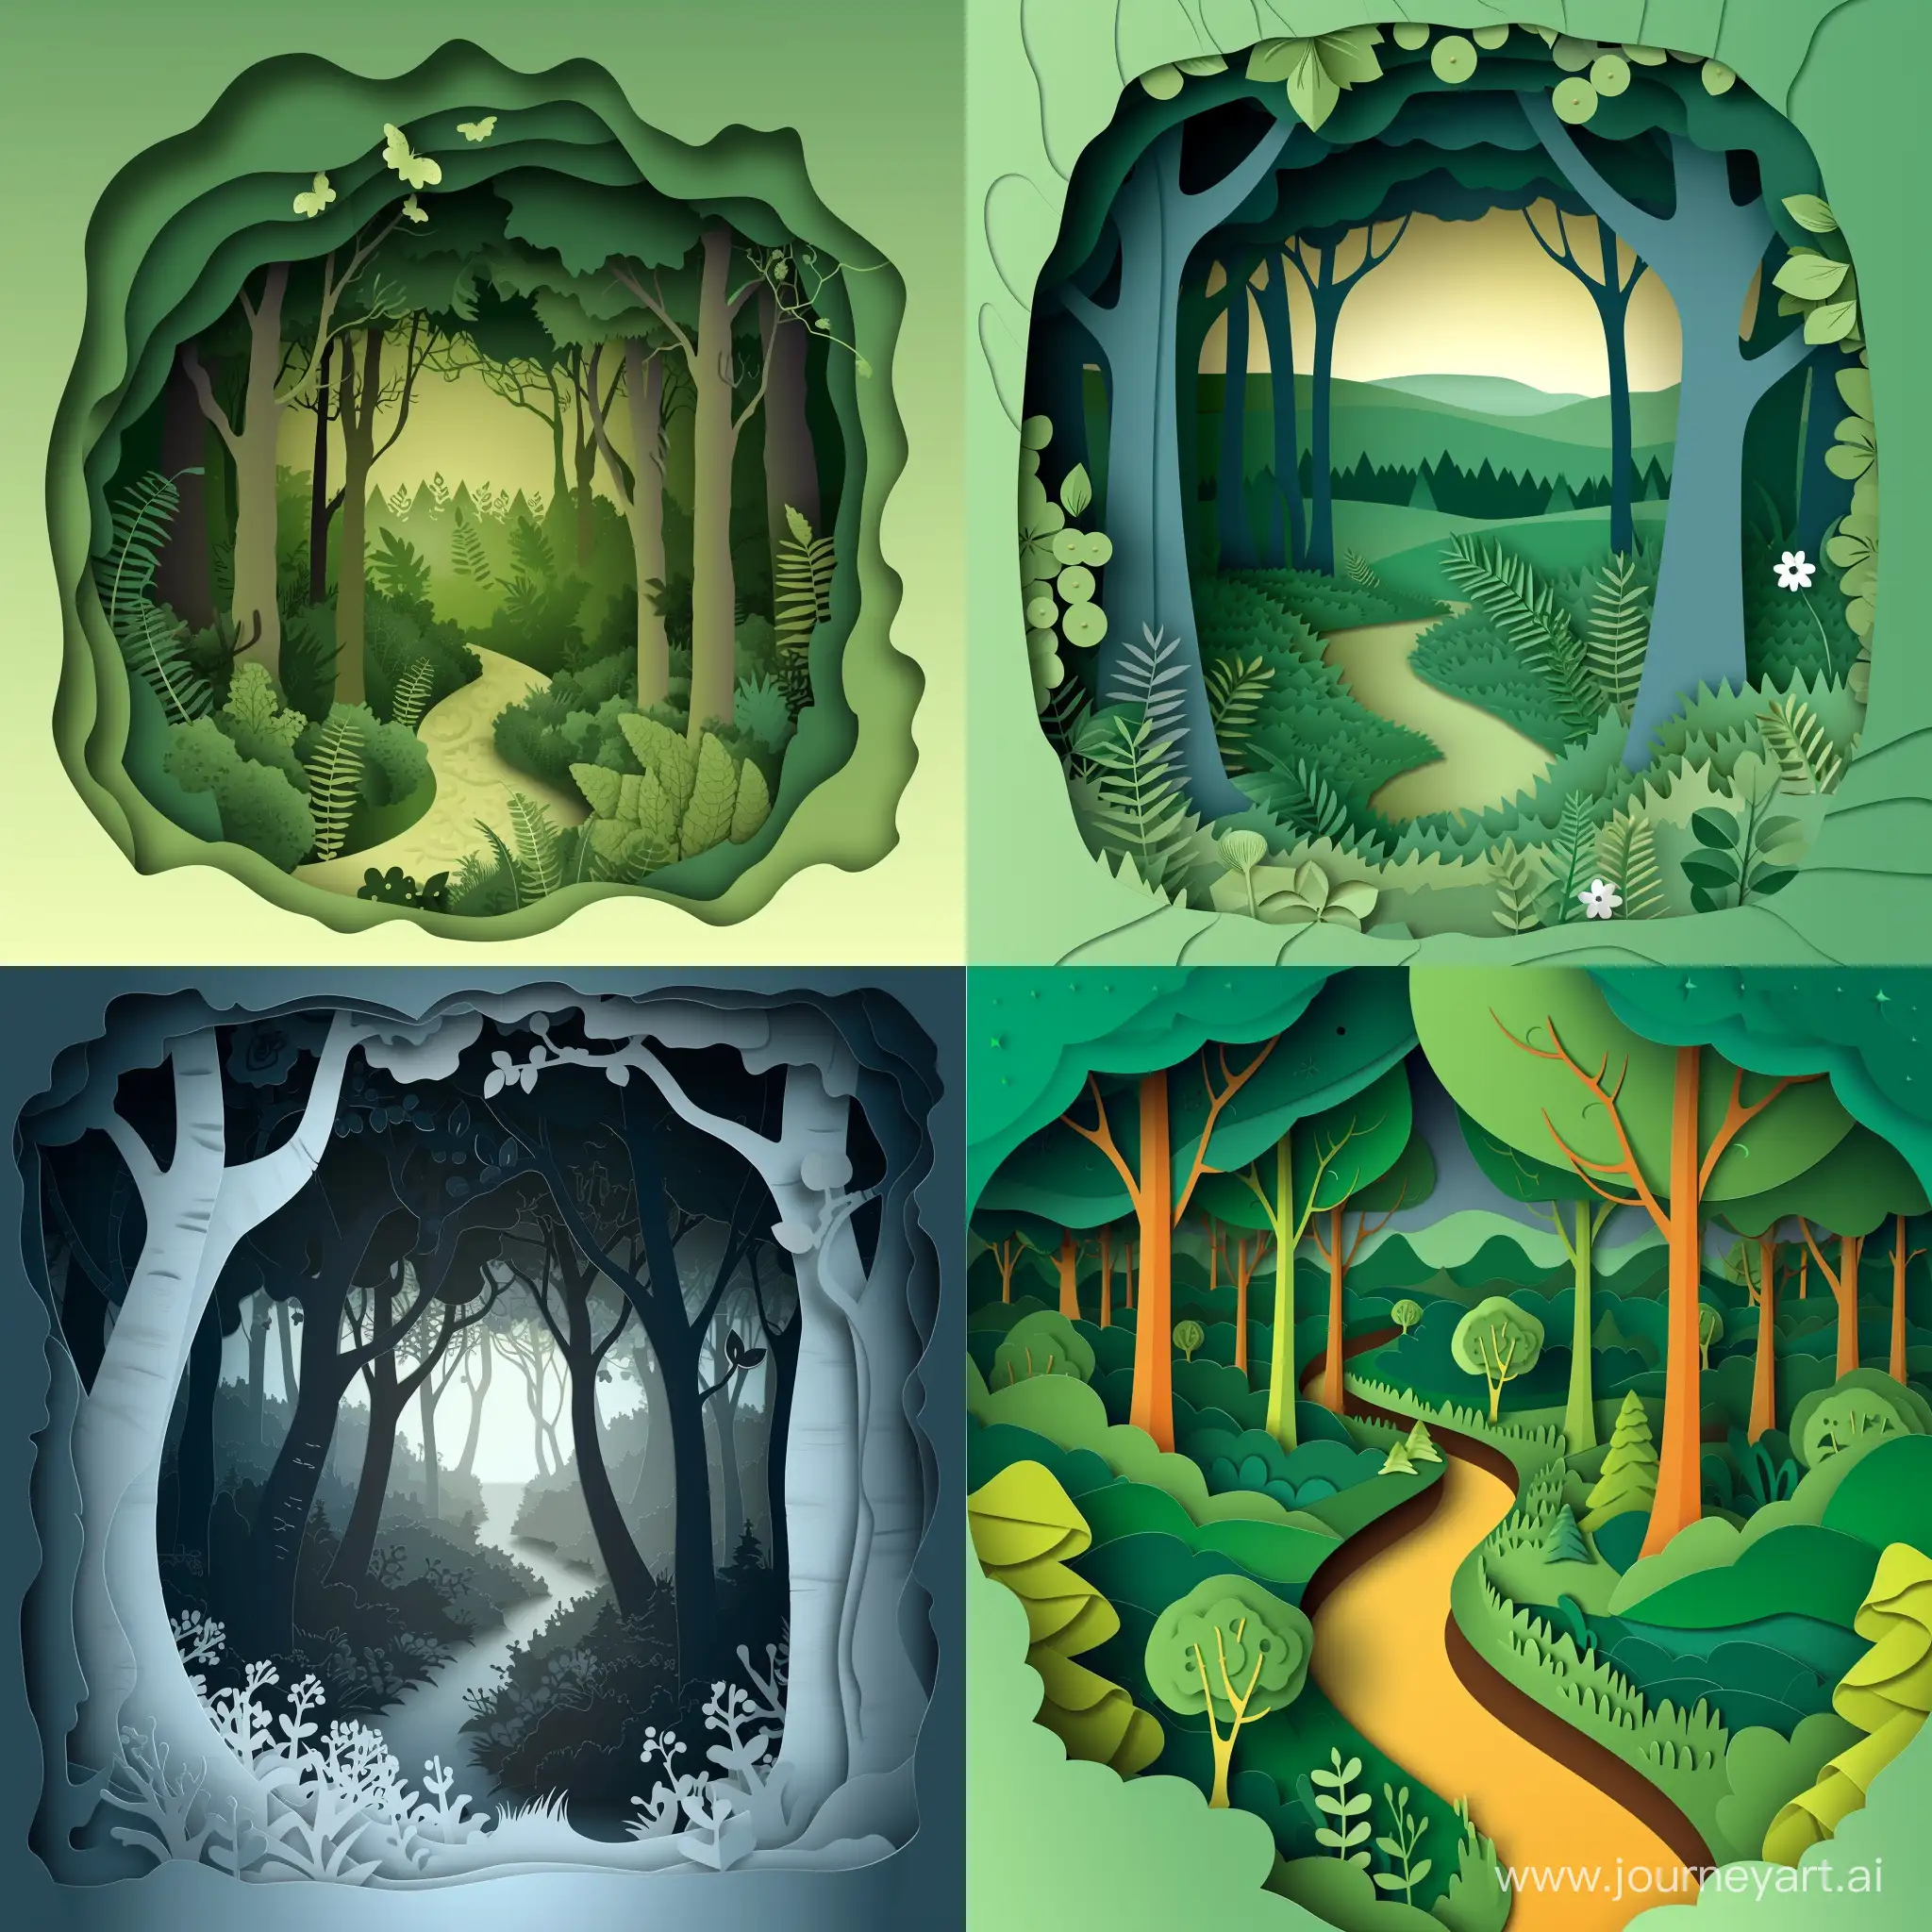 Enchanting-Forest-Woodland-Fantasy-Landscape-Cut-Paper-Art